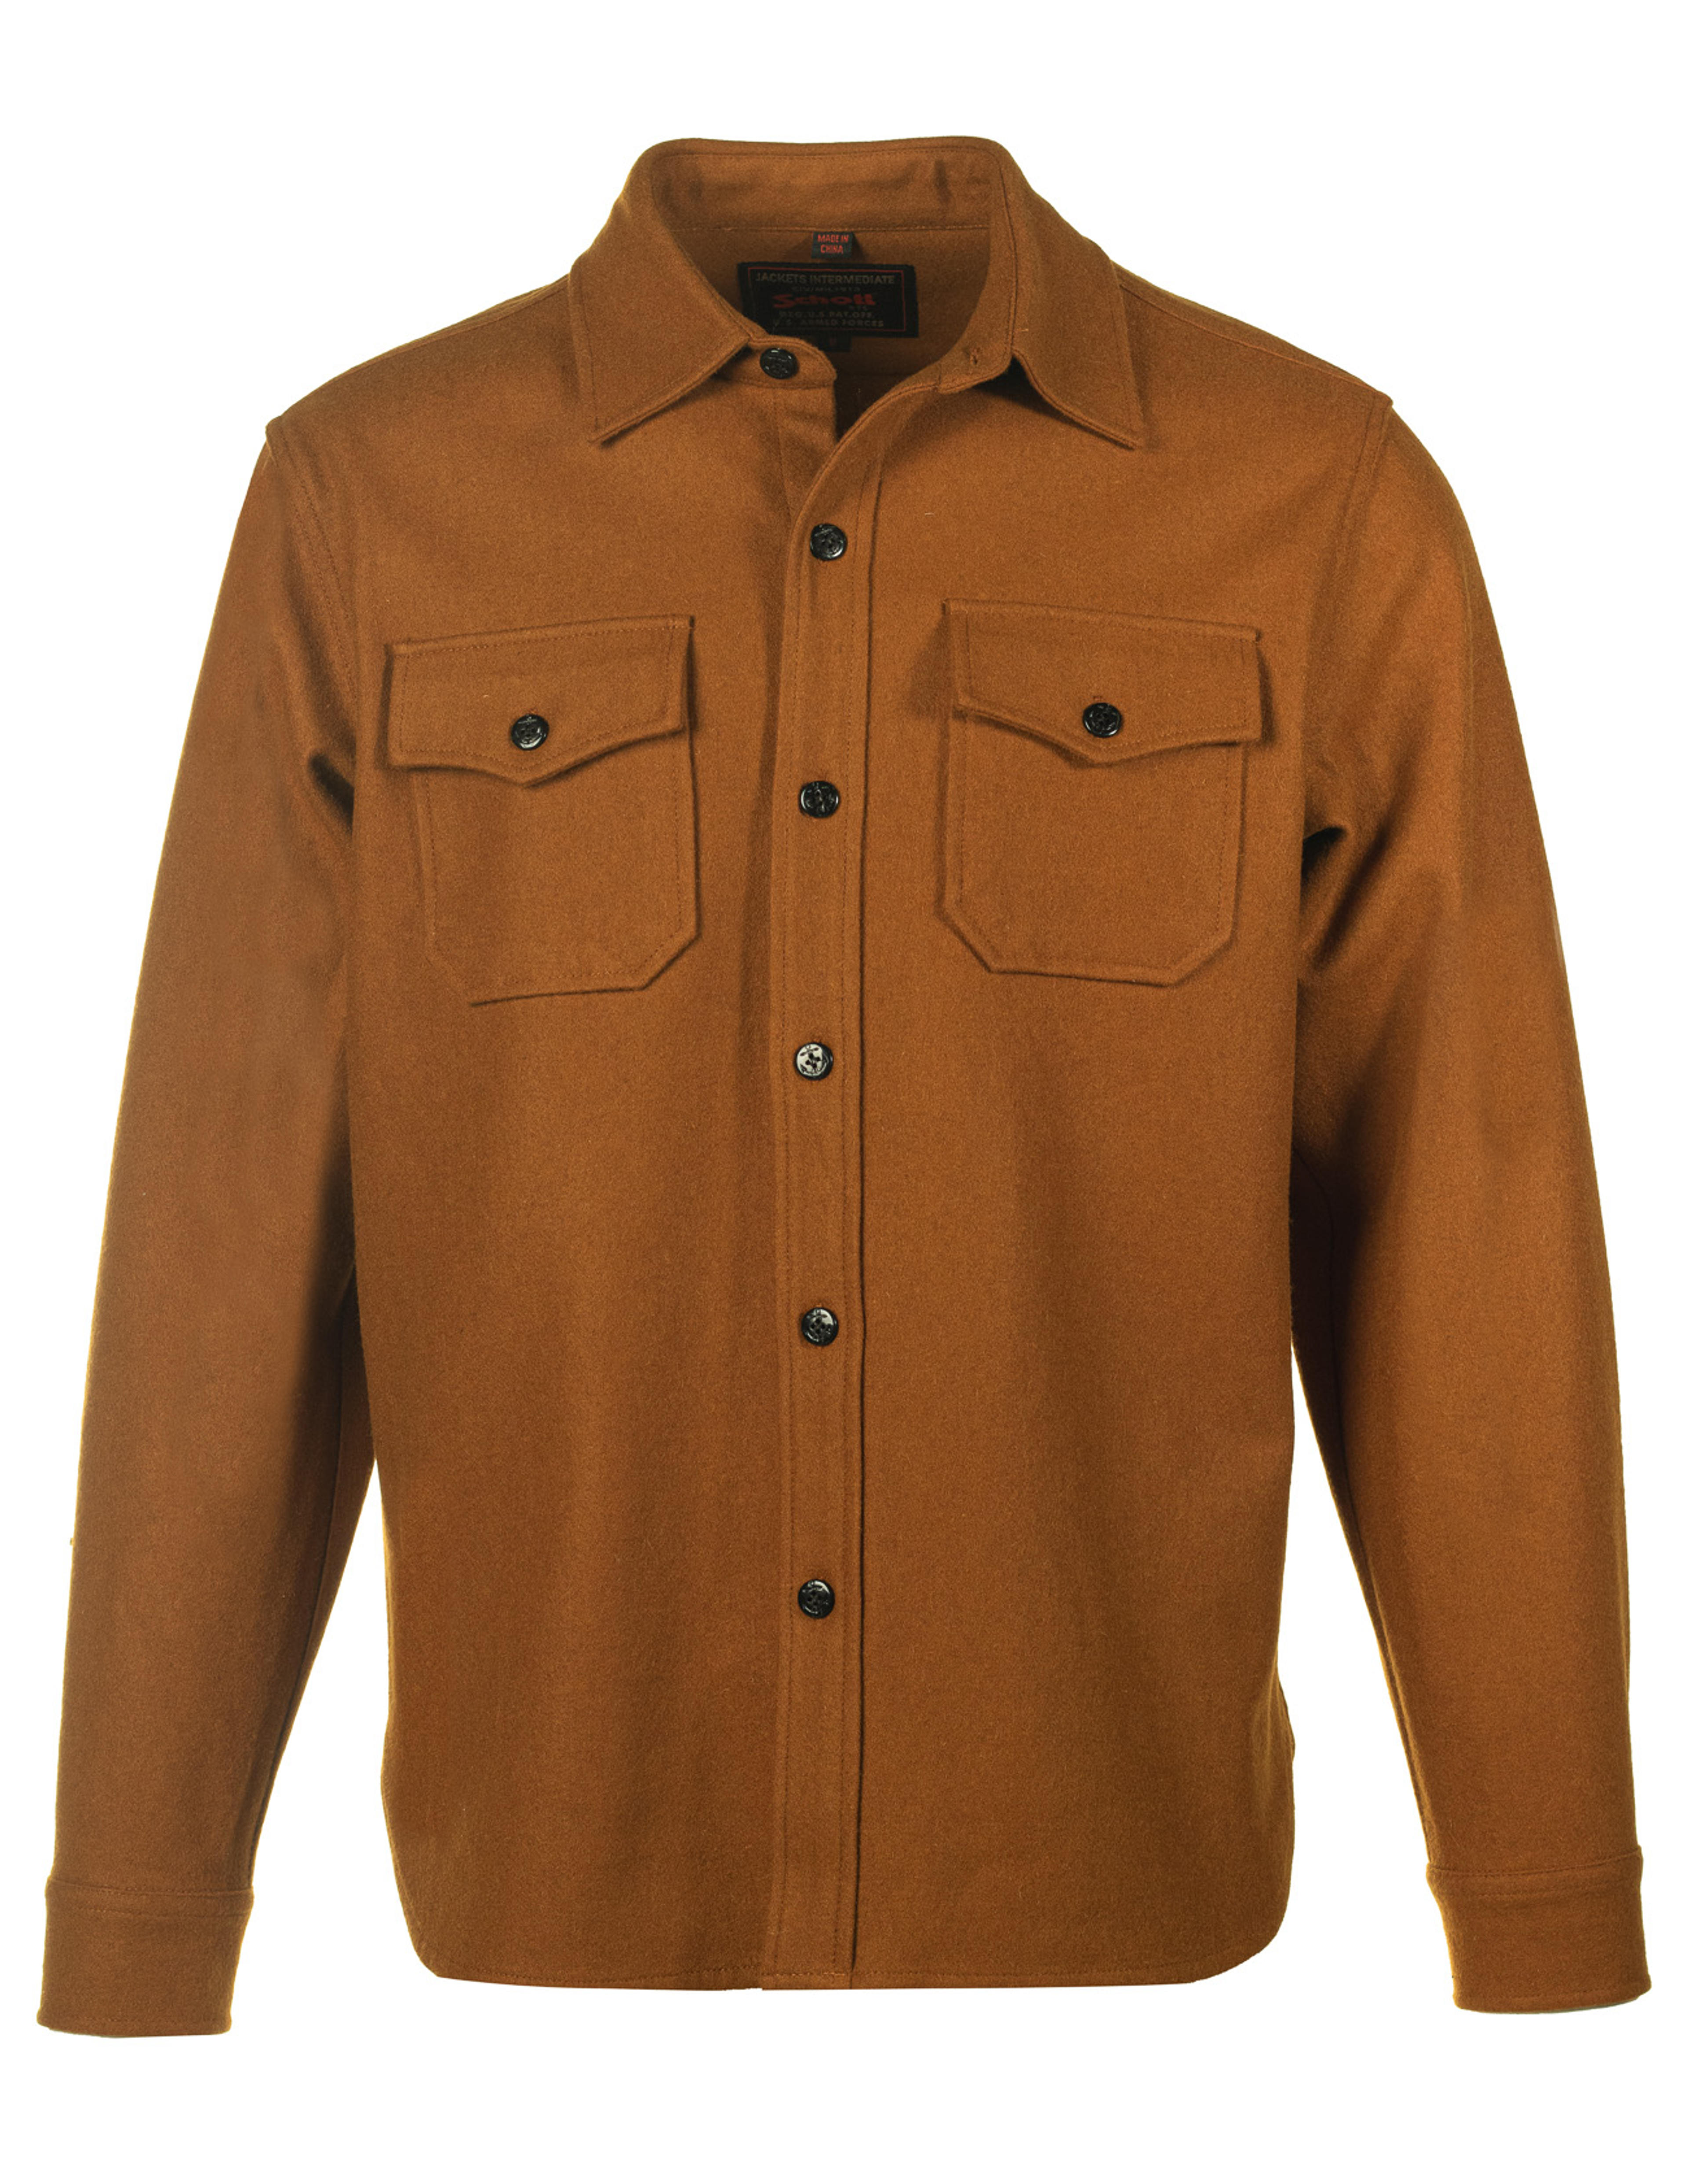 Schott N.Y.C. 7810 Men's CPO Wool Shirt